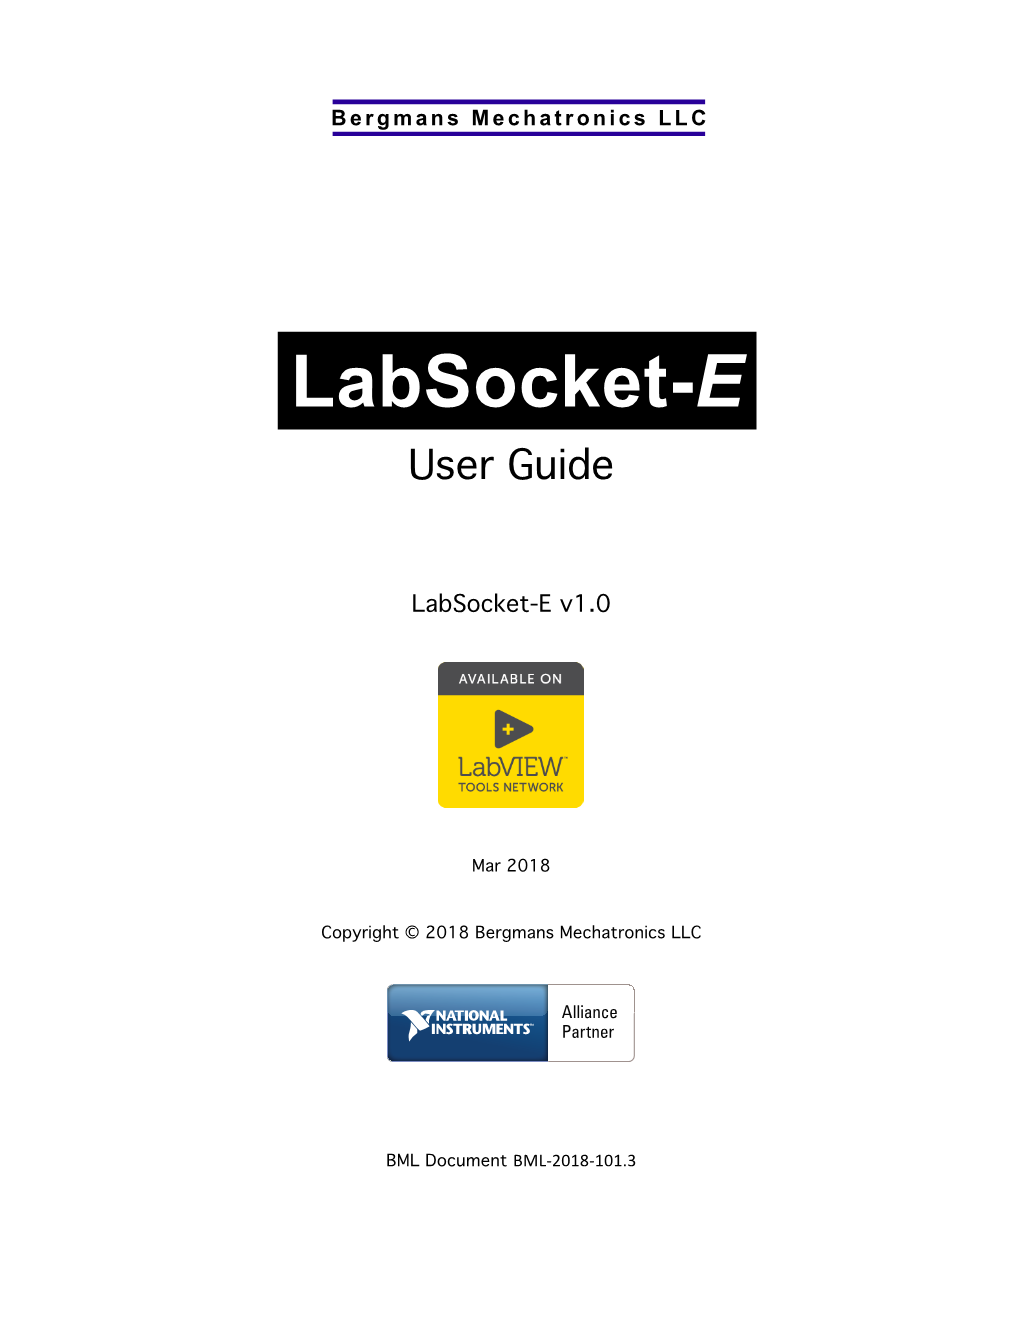 Labsocket-E User Guide